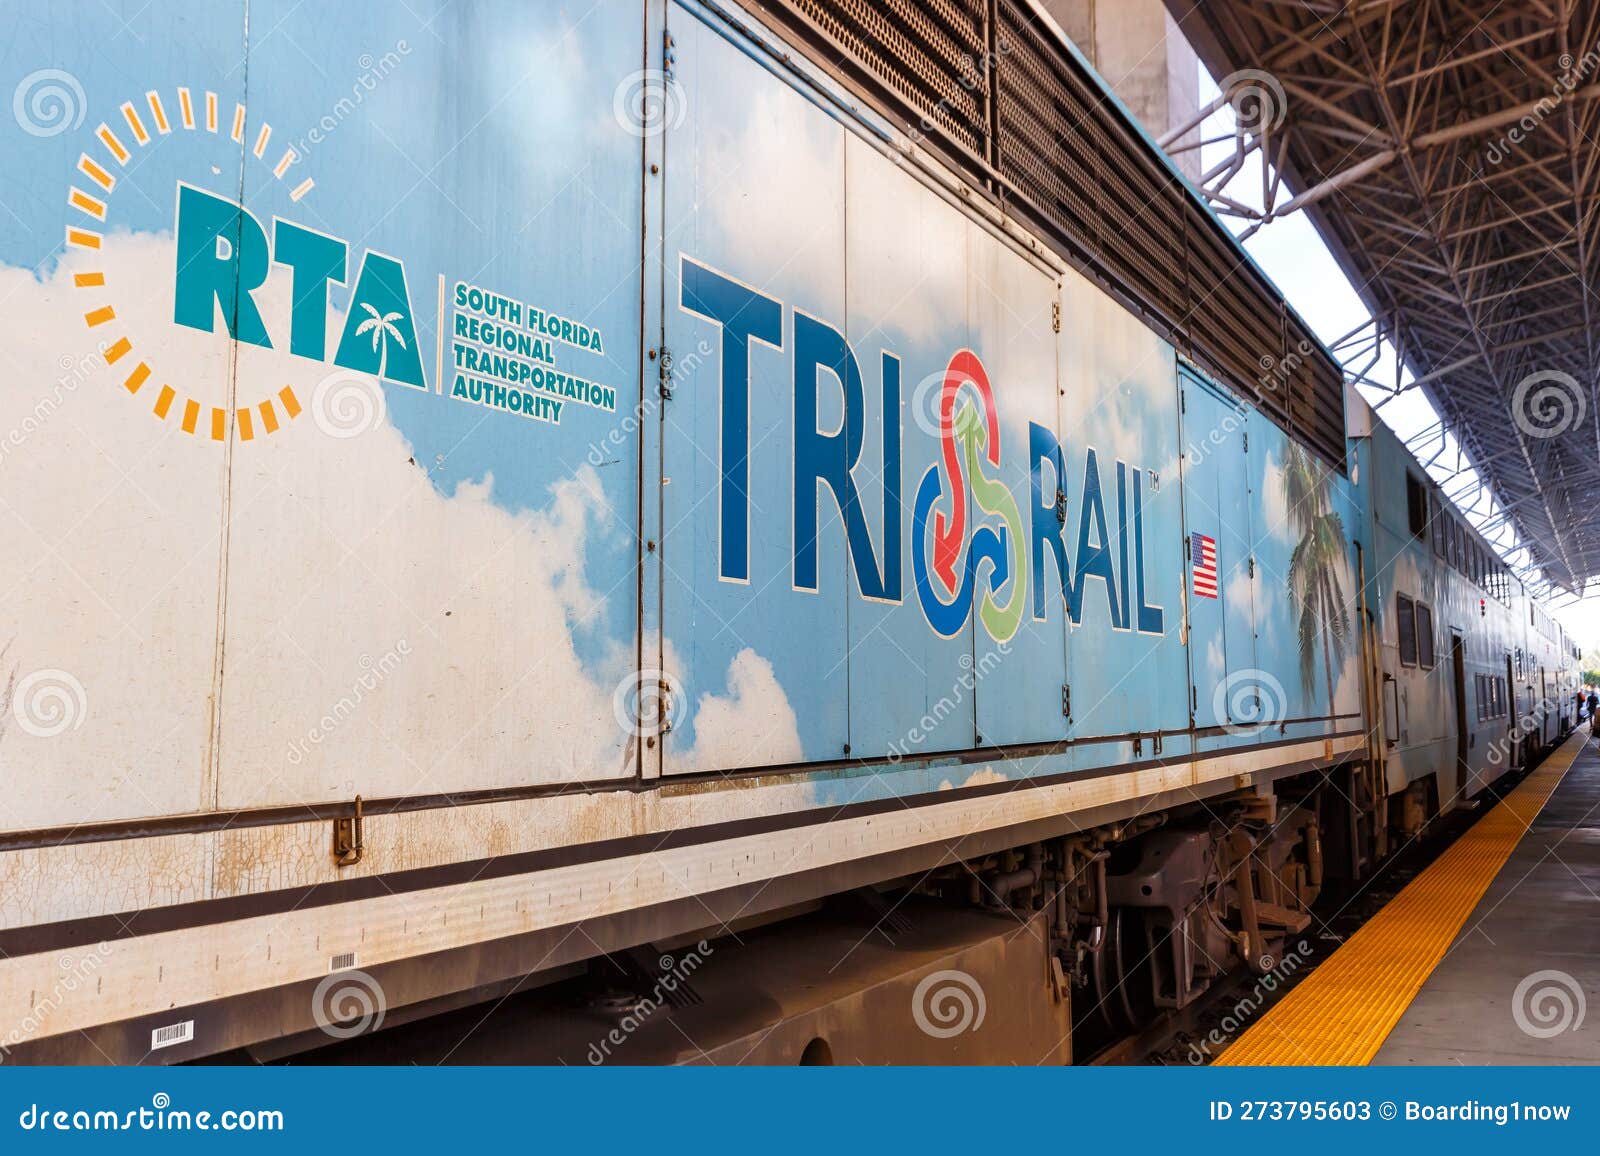 Tri-Rail Logo on a Commuter Rail Train at Miami International Airport ...